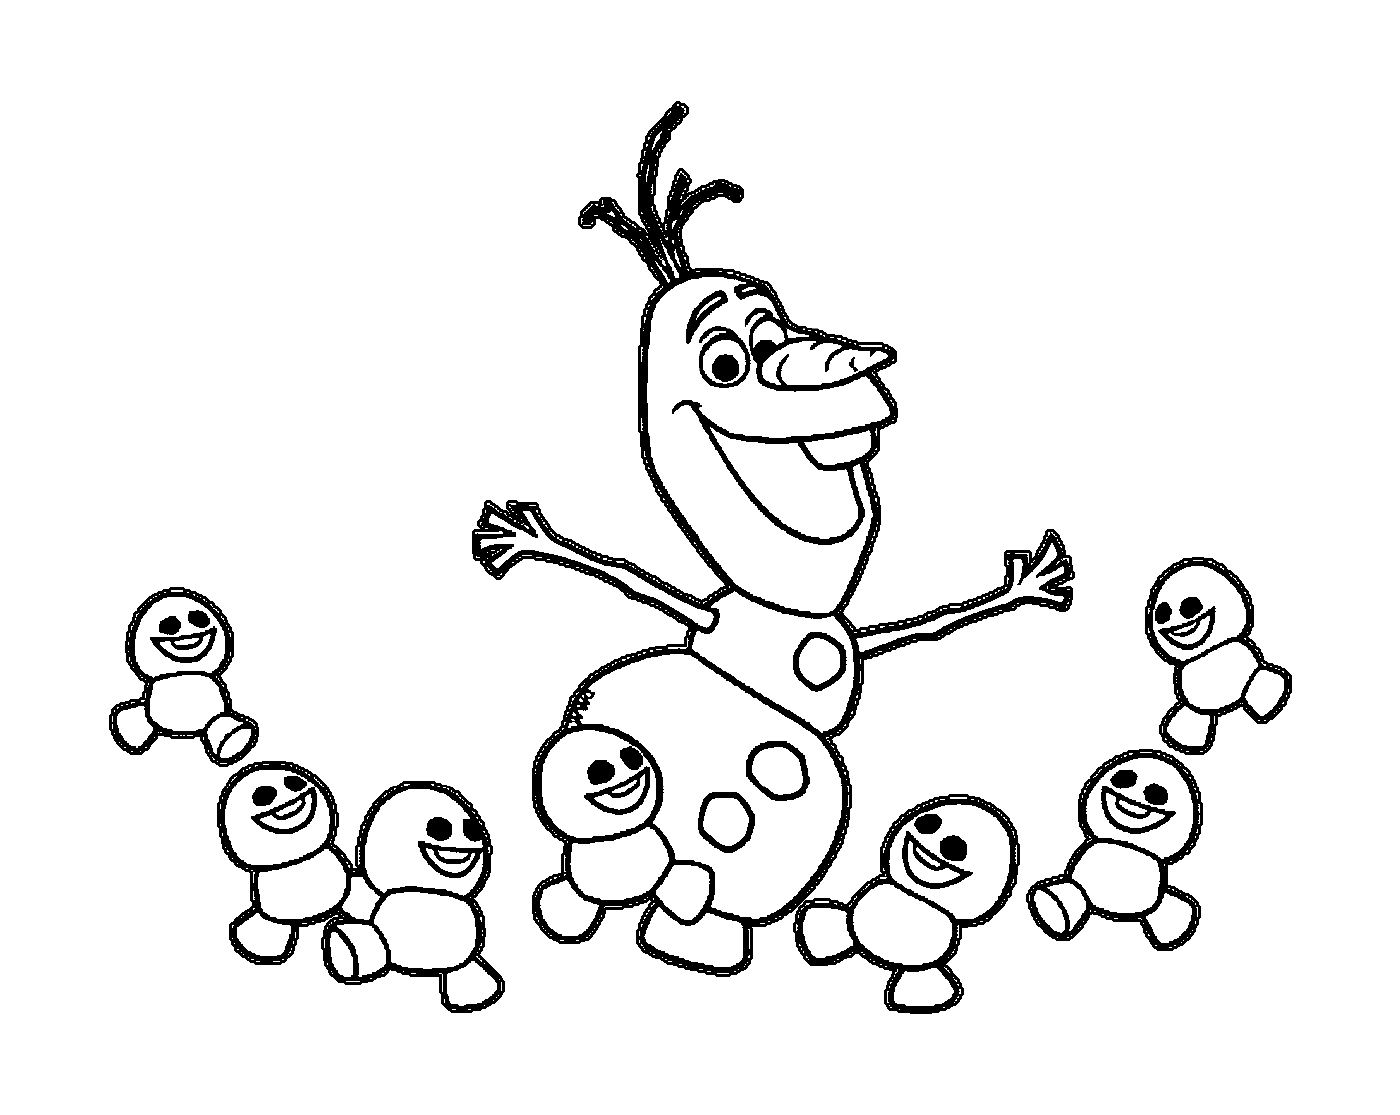 Olaf dance avec les snowgies de la reine des neiges